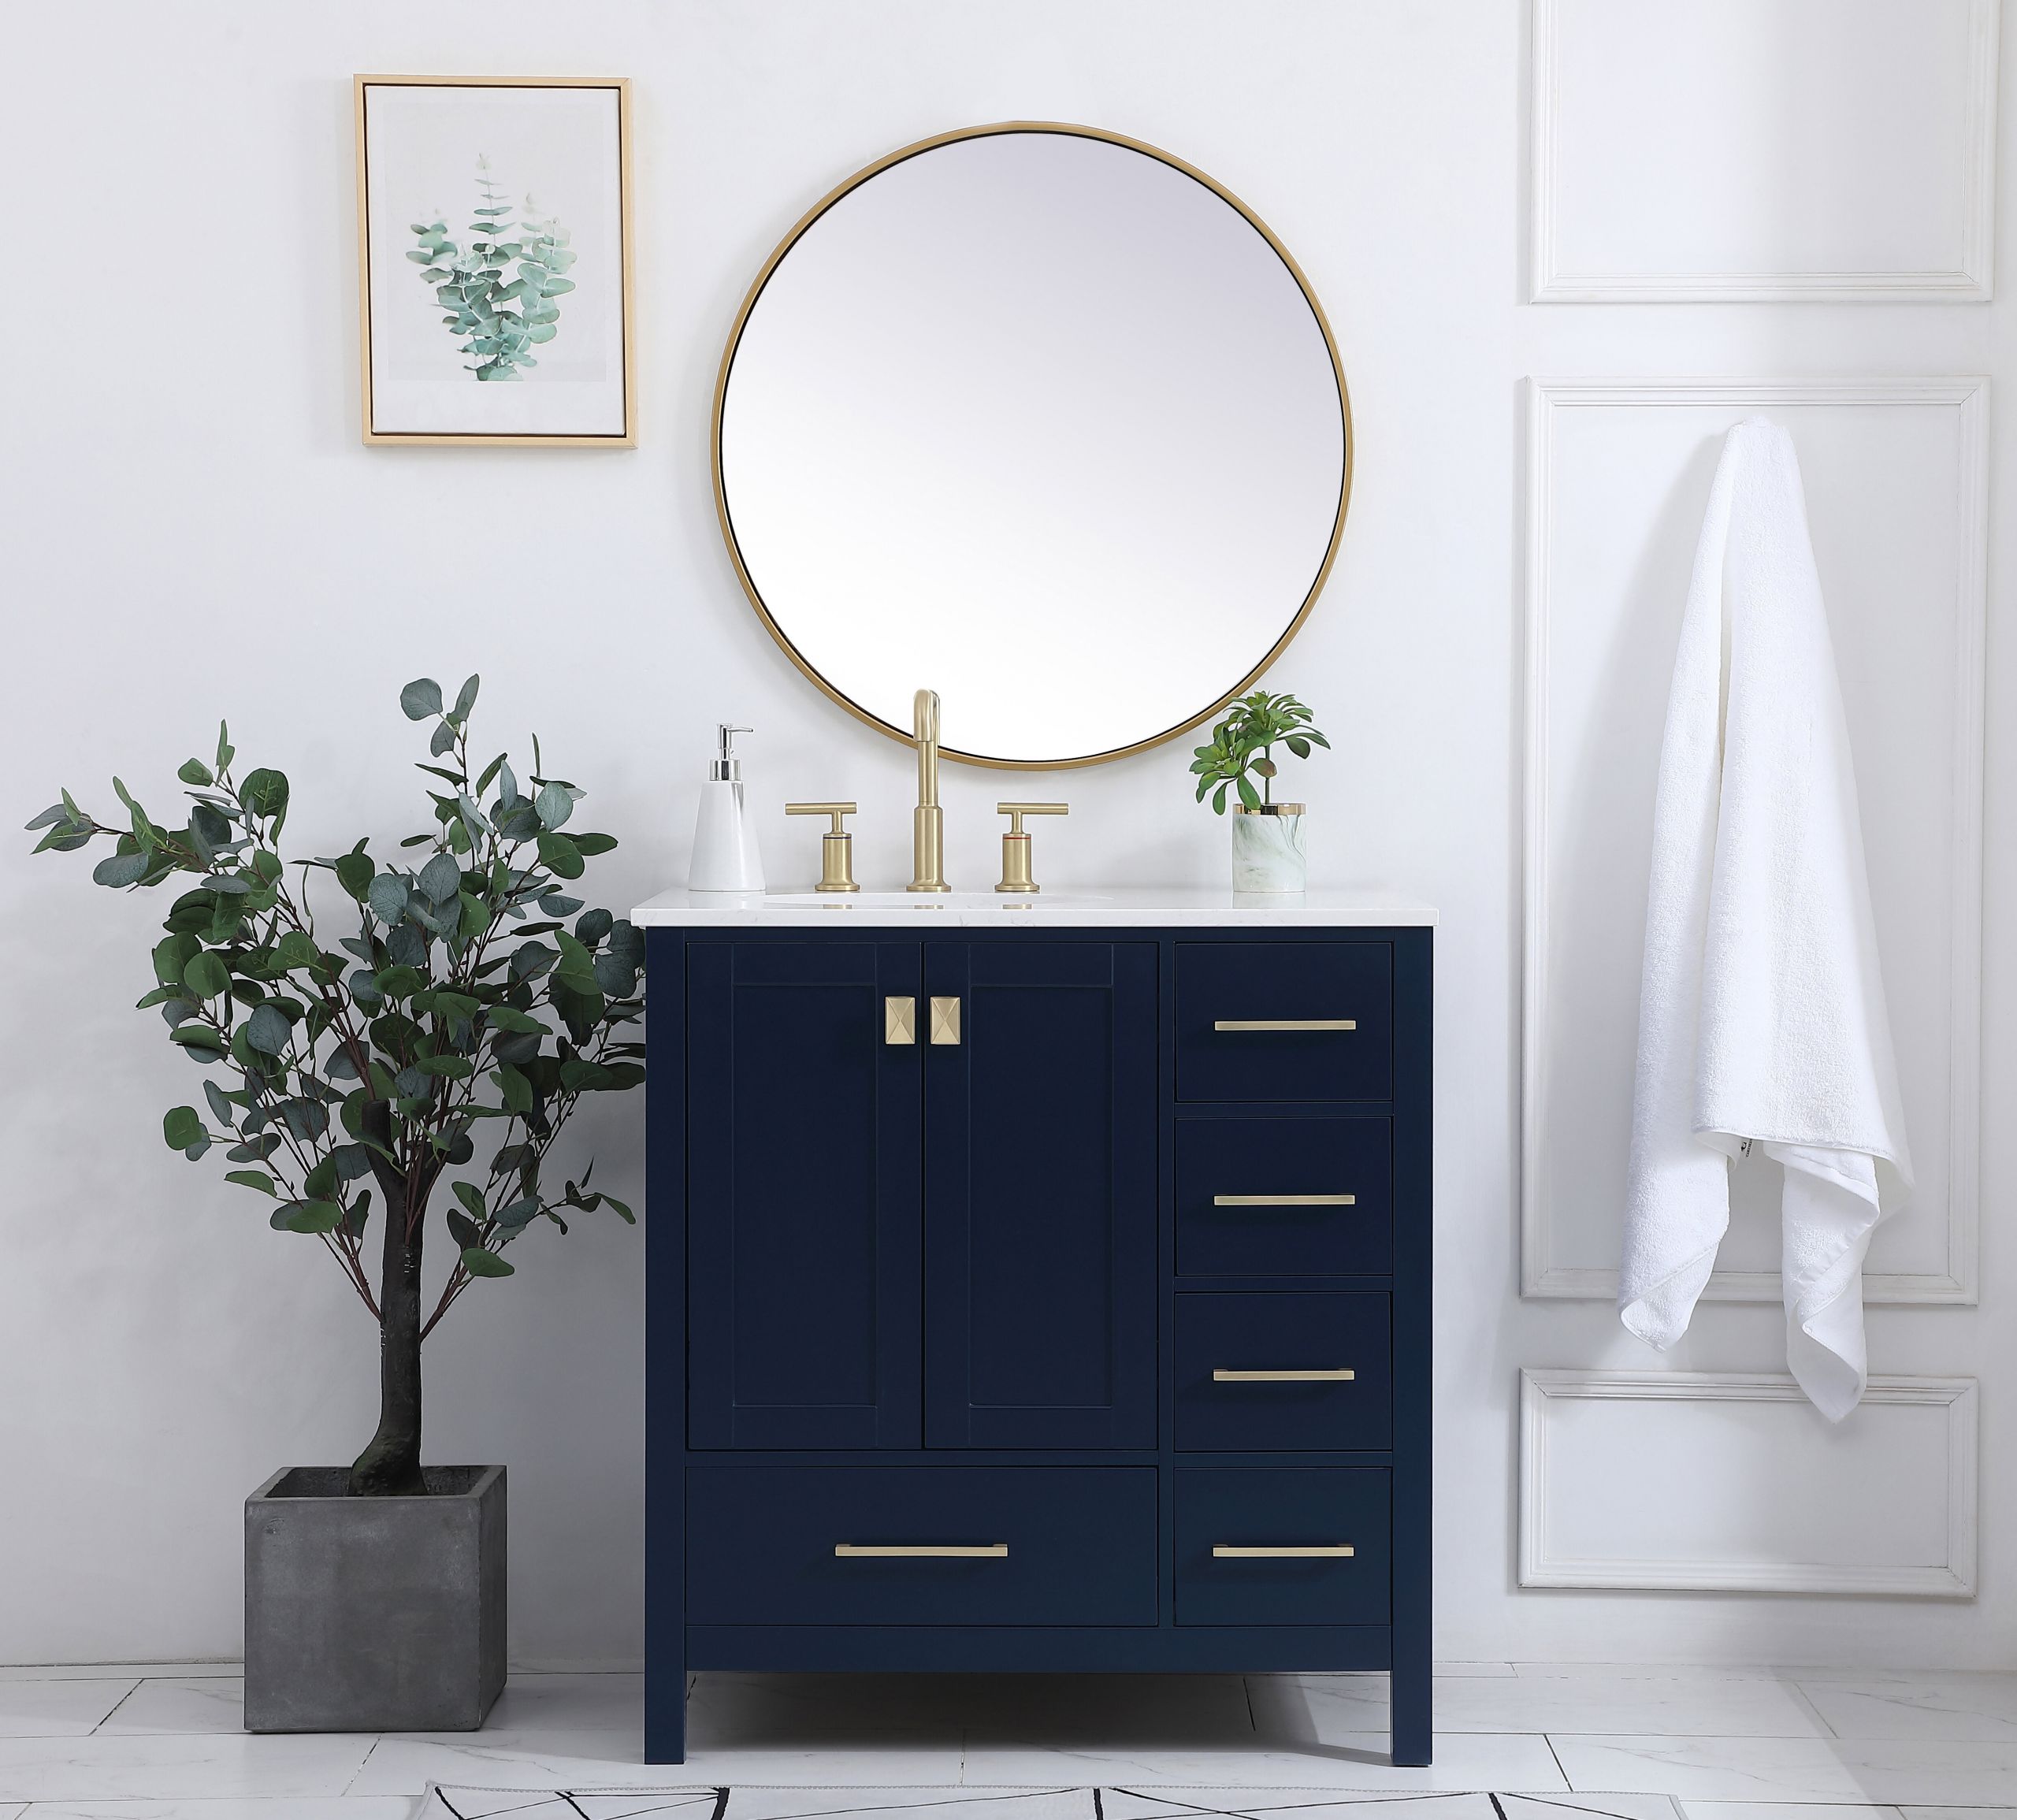 Best Deals On Bathroom Vanities
 [BIG SALE] Our Best Bathroom Vanity Deals You’ll Love In